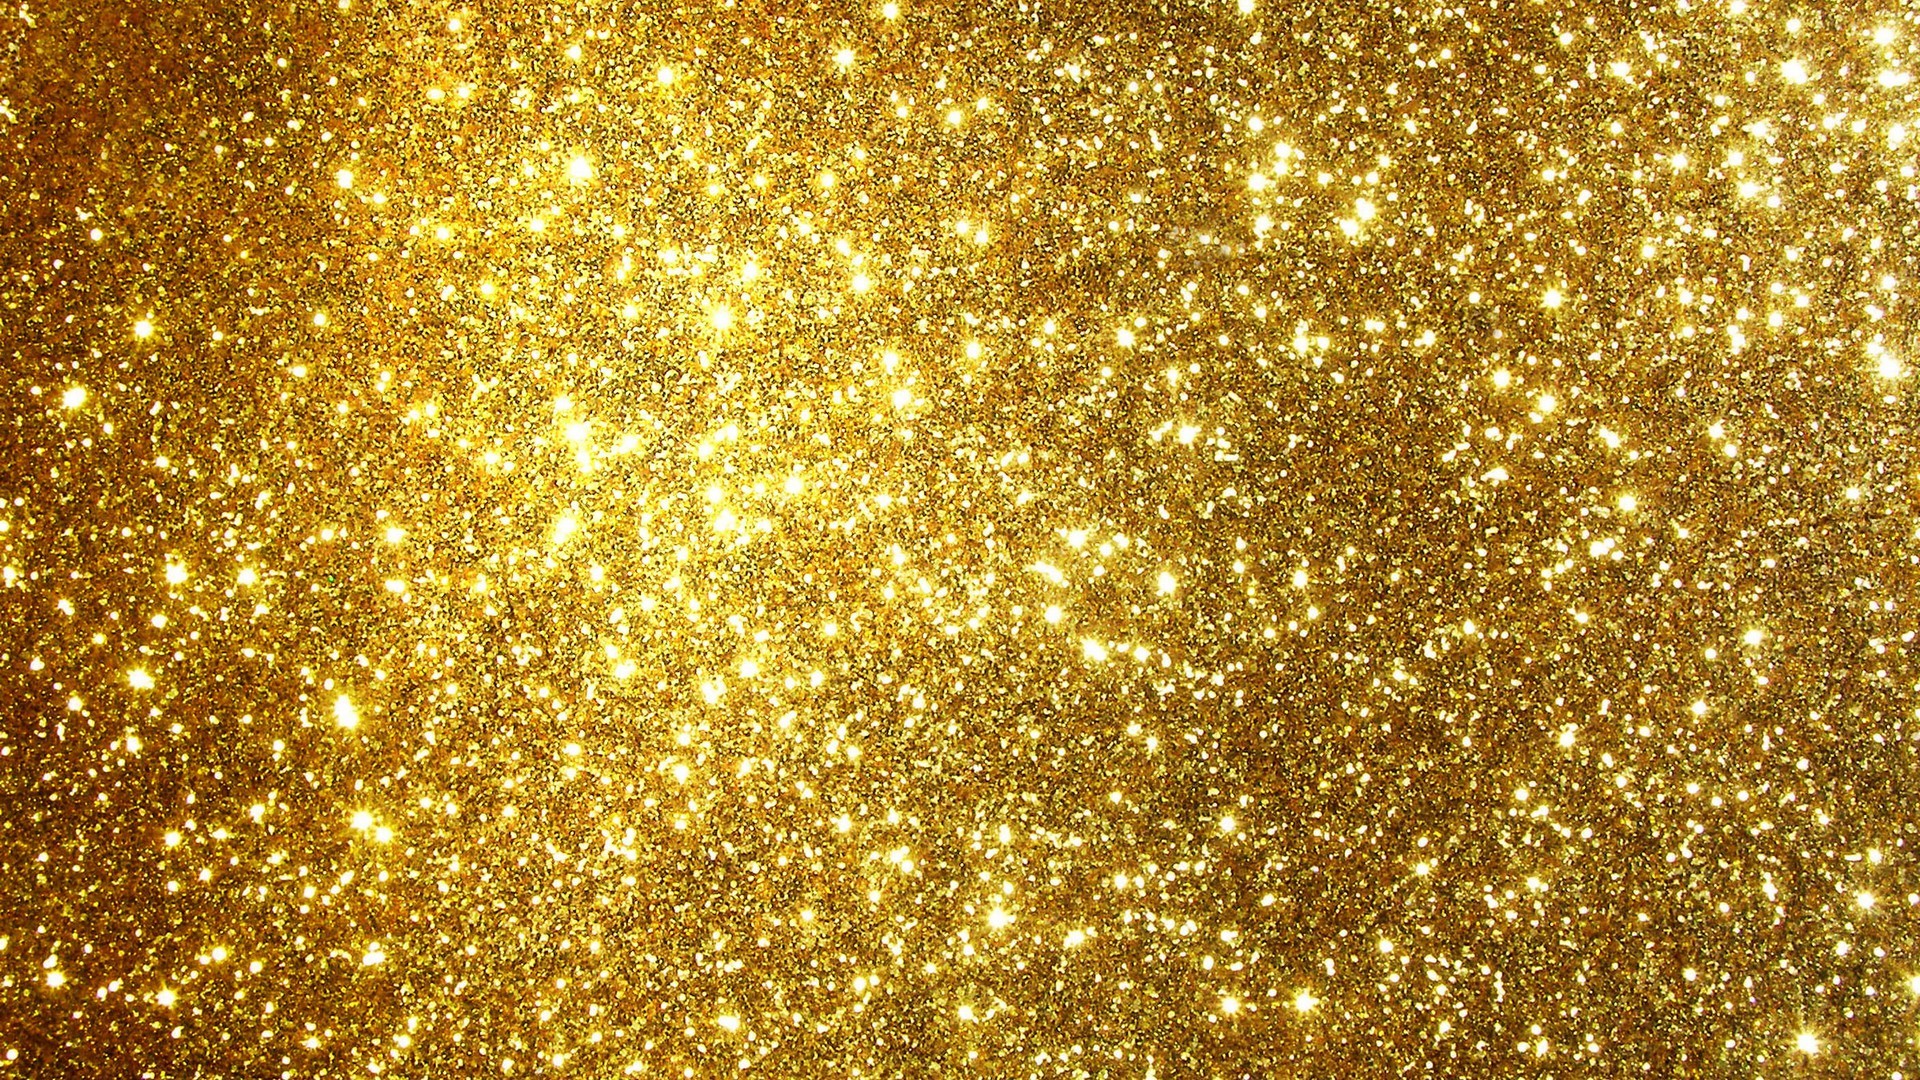 Gold Glitter Wallpaper Hd Data-src /w/full/a/7/8/526085 - Gold Glitter  Wallpaper Hd - 1920x1080 Wallpaper 